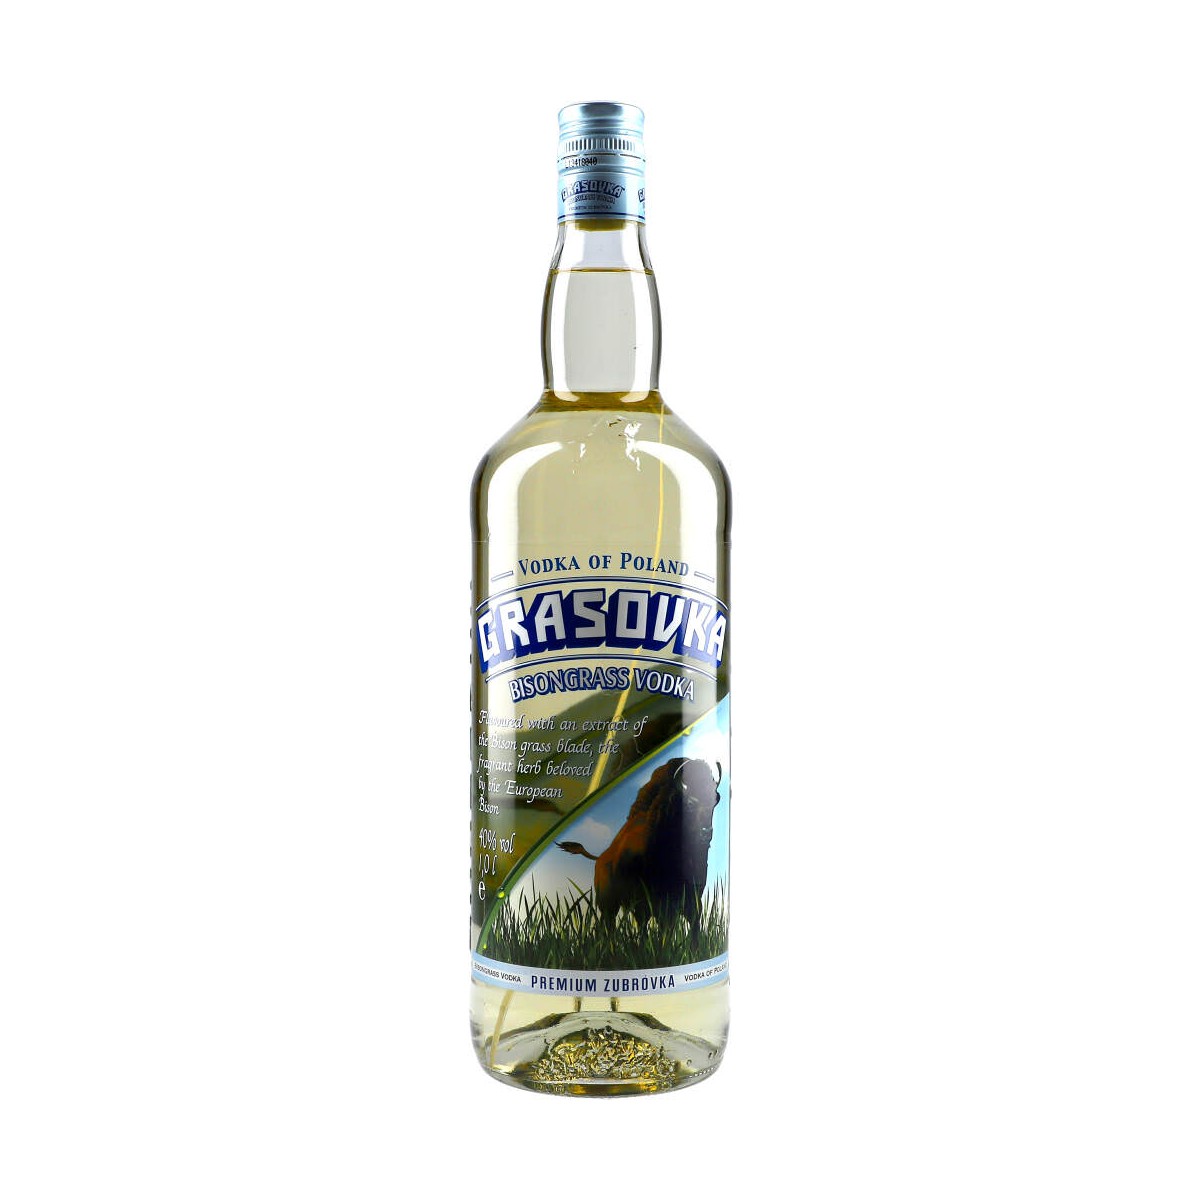 38% Bisongrass Vodka Grasovka 100cl